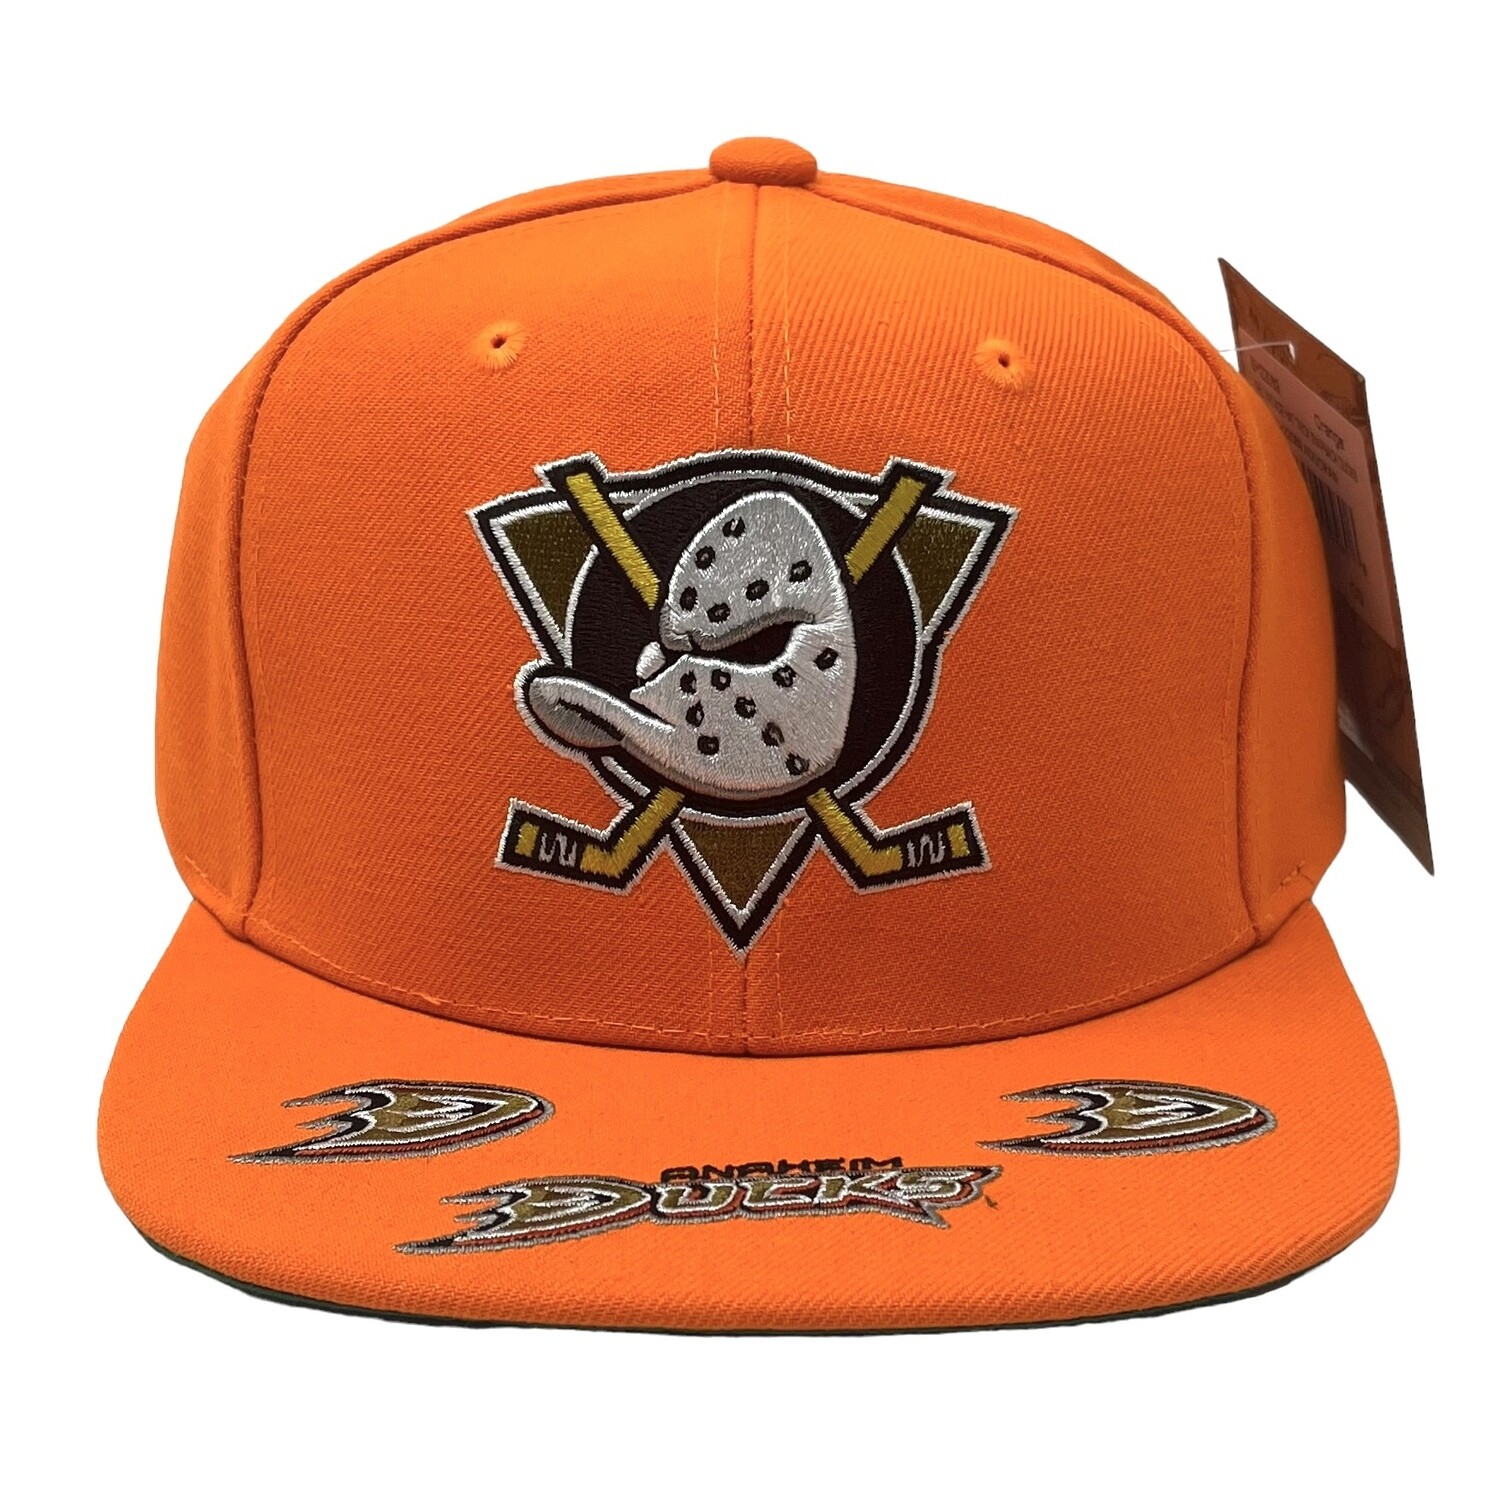 Anaheim Ducks Mitchell & Ness Vintage Hat Trick Snapback Hat - Orange